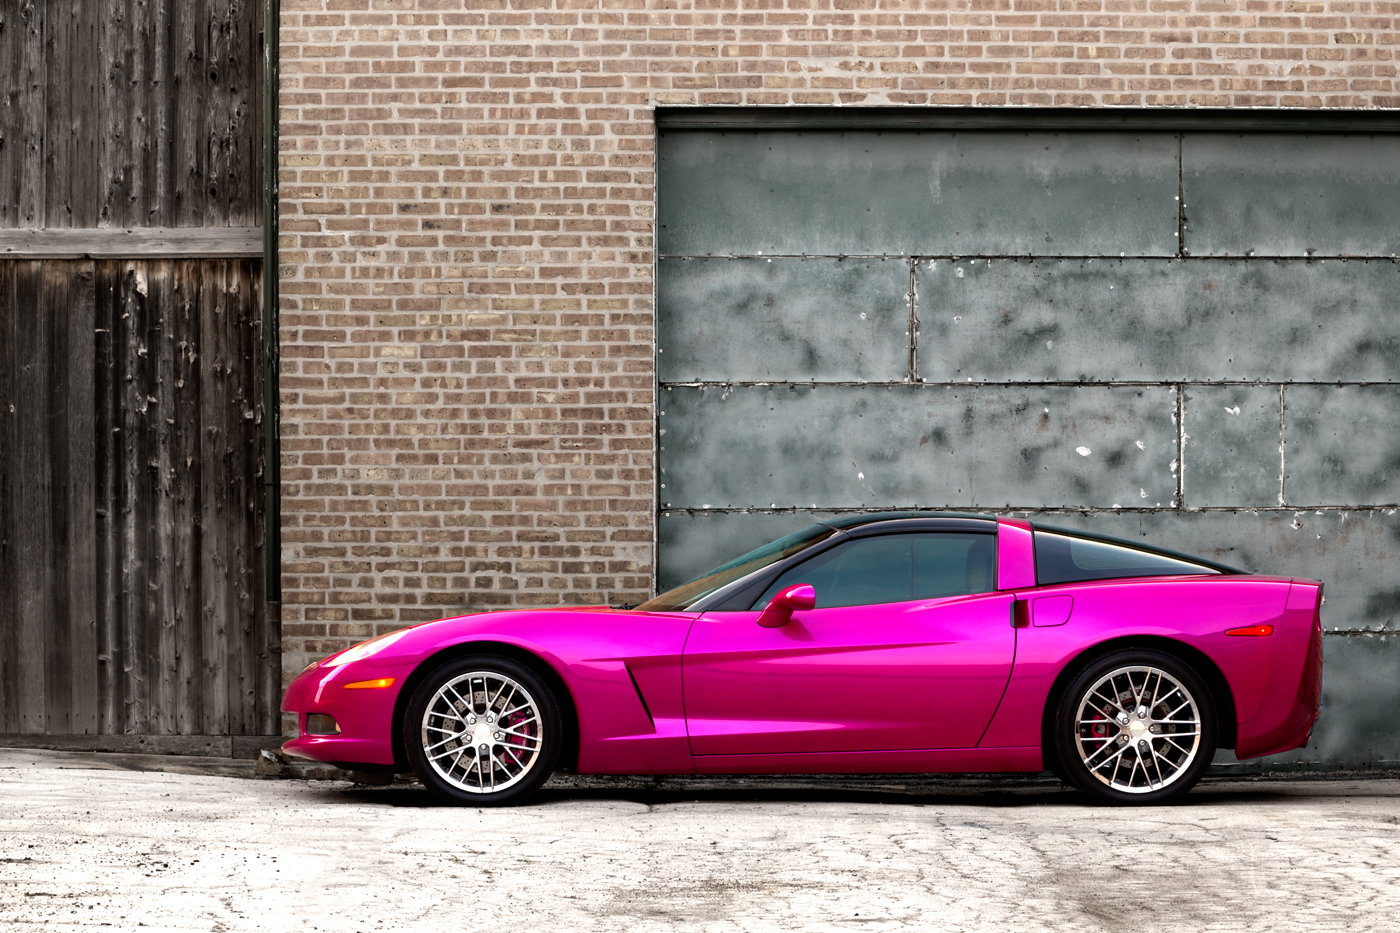 FS: 2006 Chevrolet Corvette C6 - Hot Pink - Chicago.